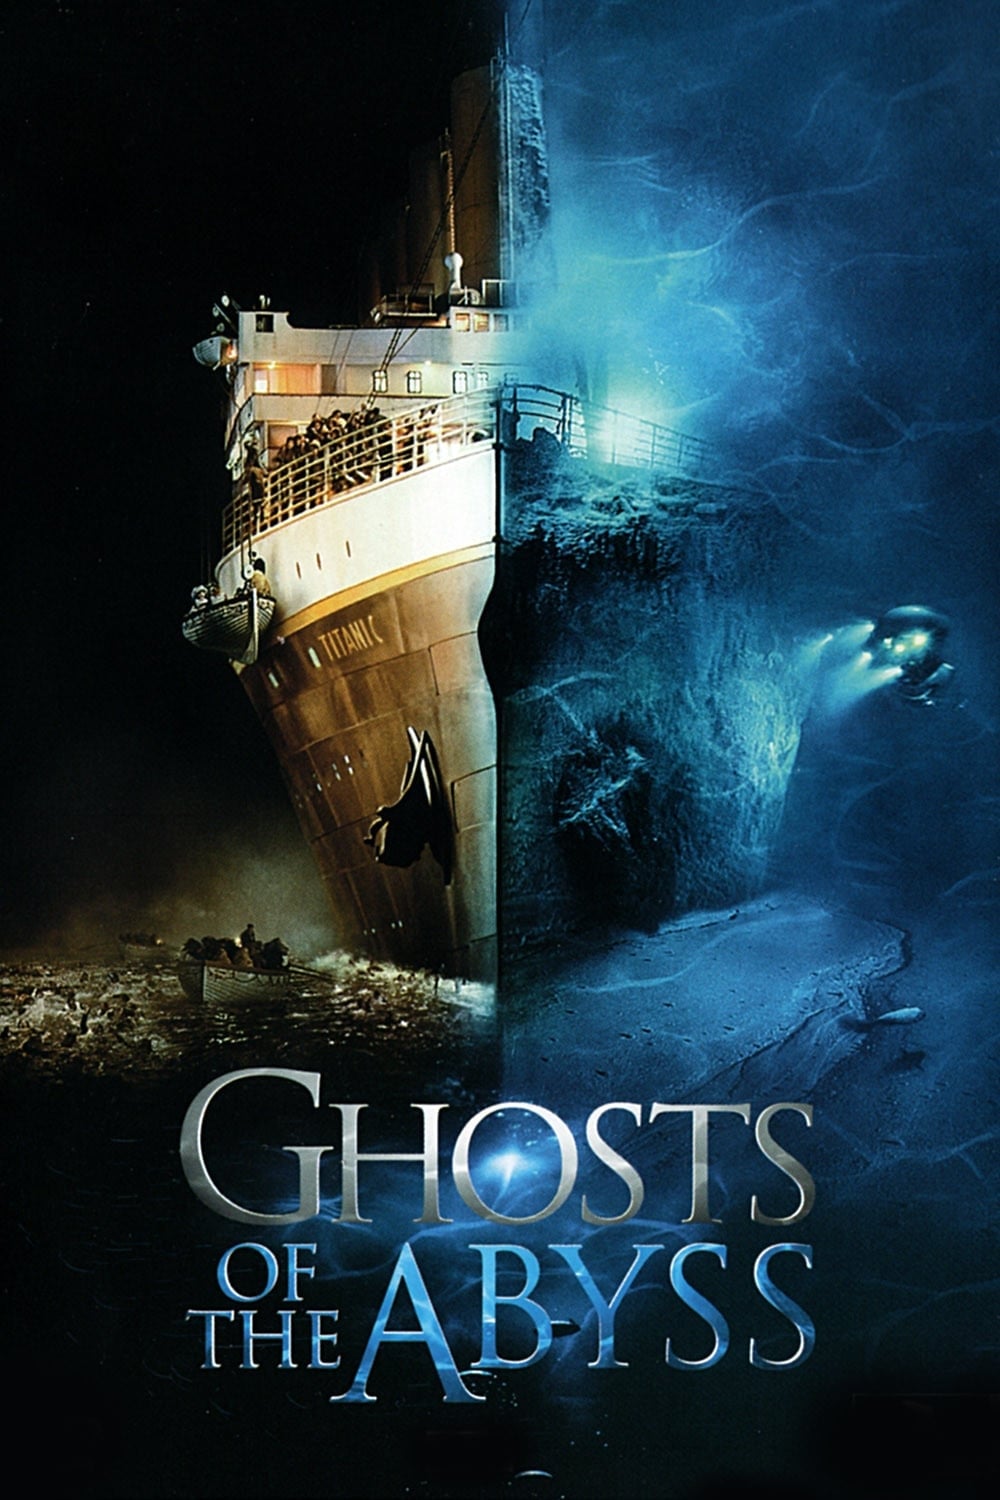 Misterios del Titanic (2003)